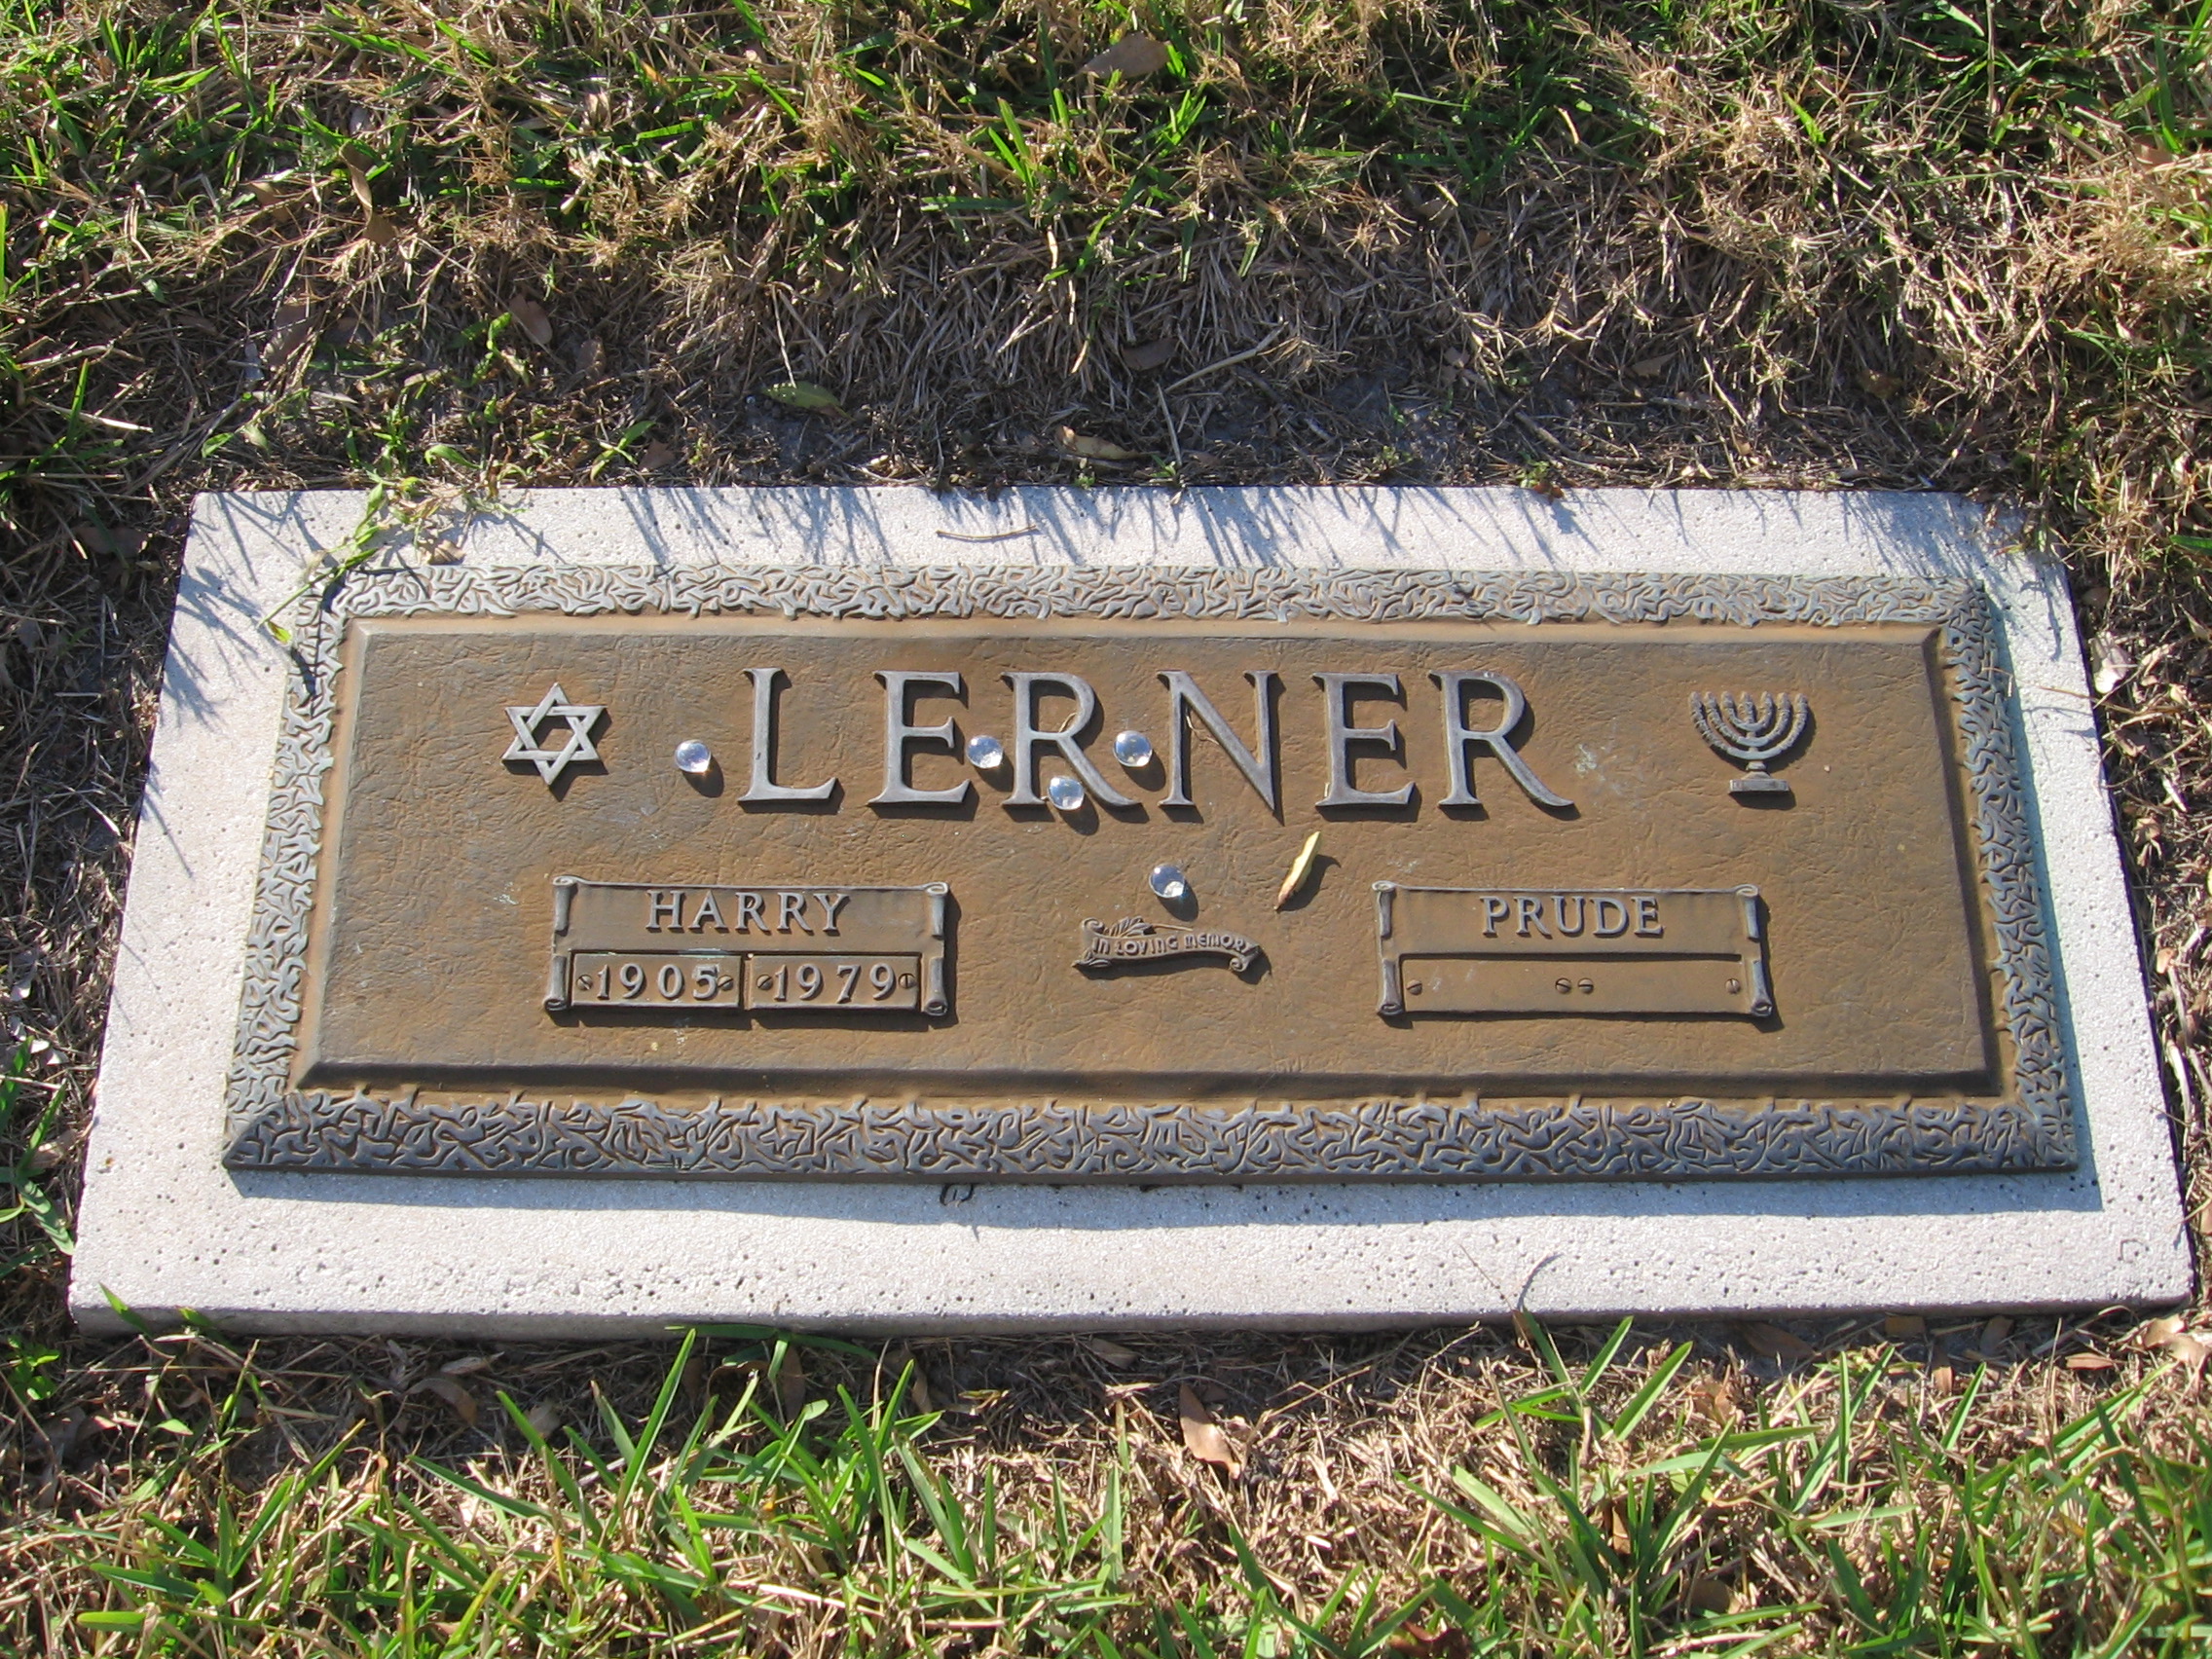 Harry Lerner